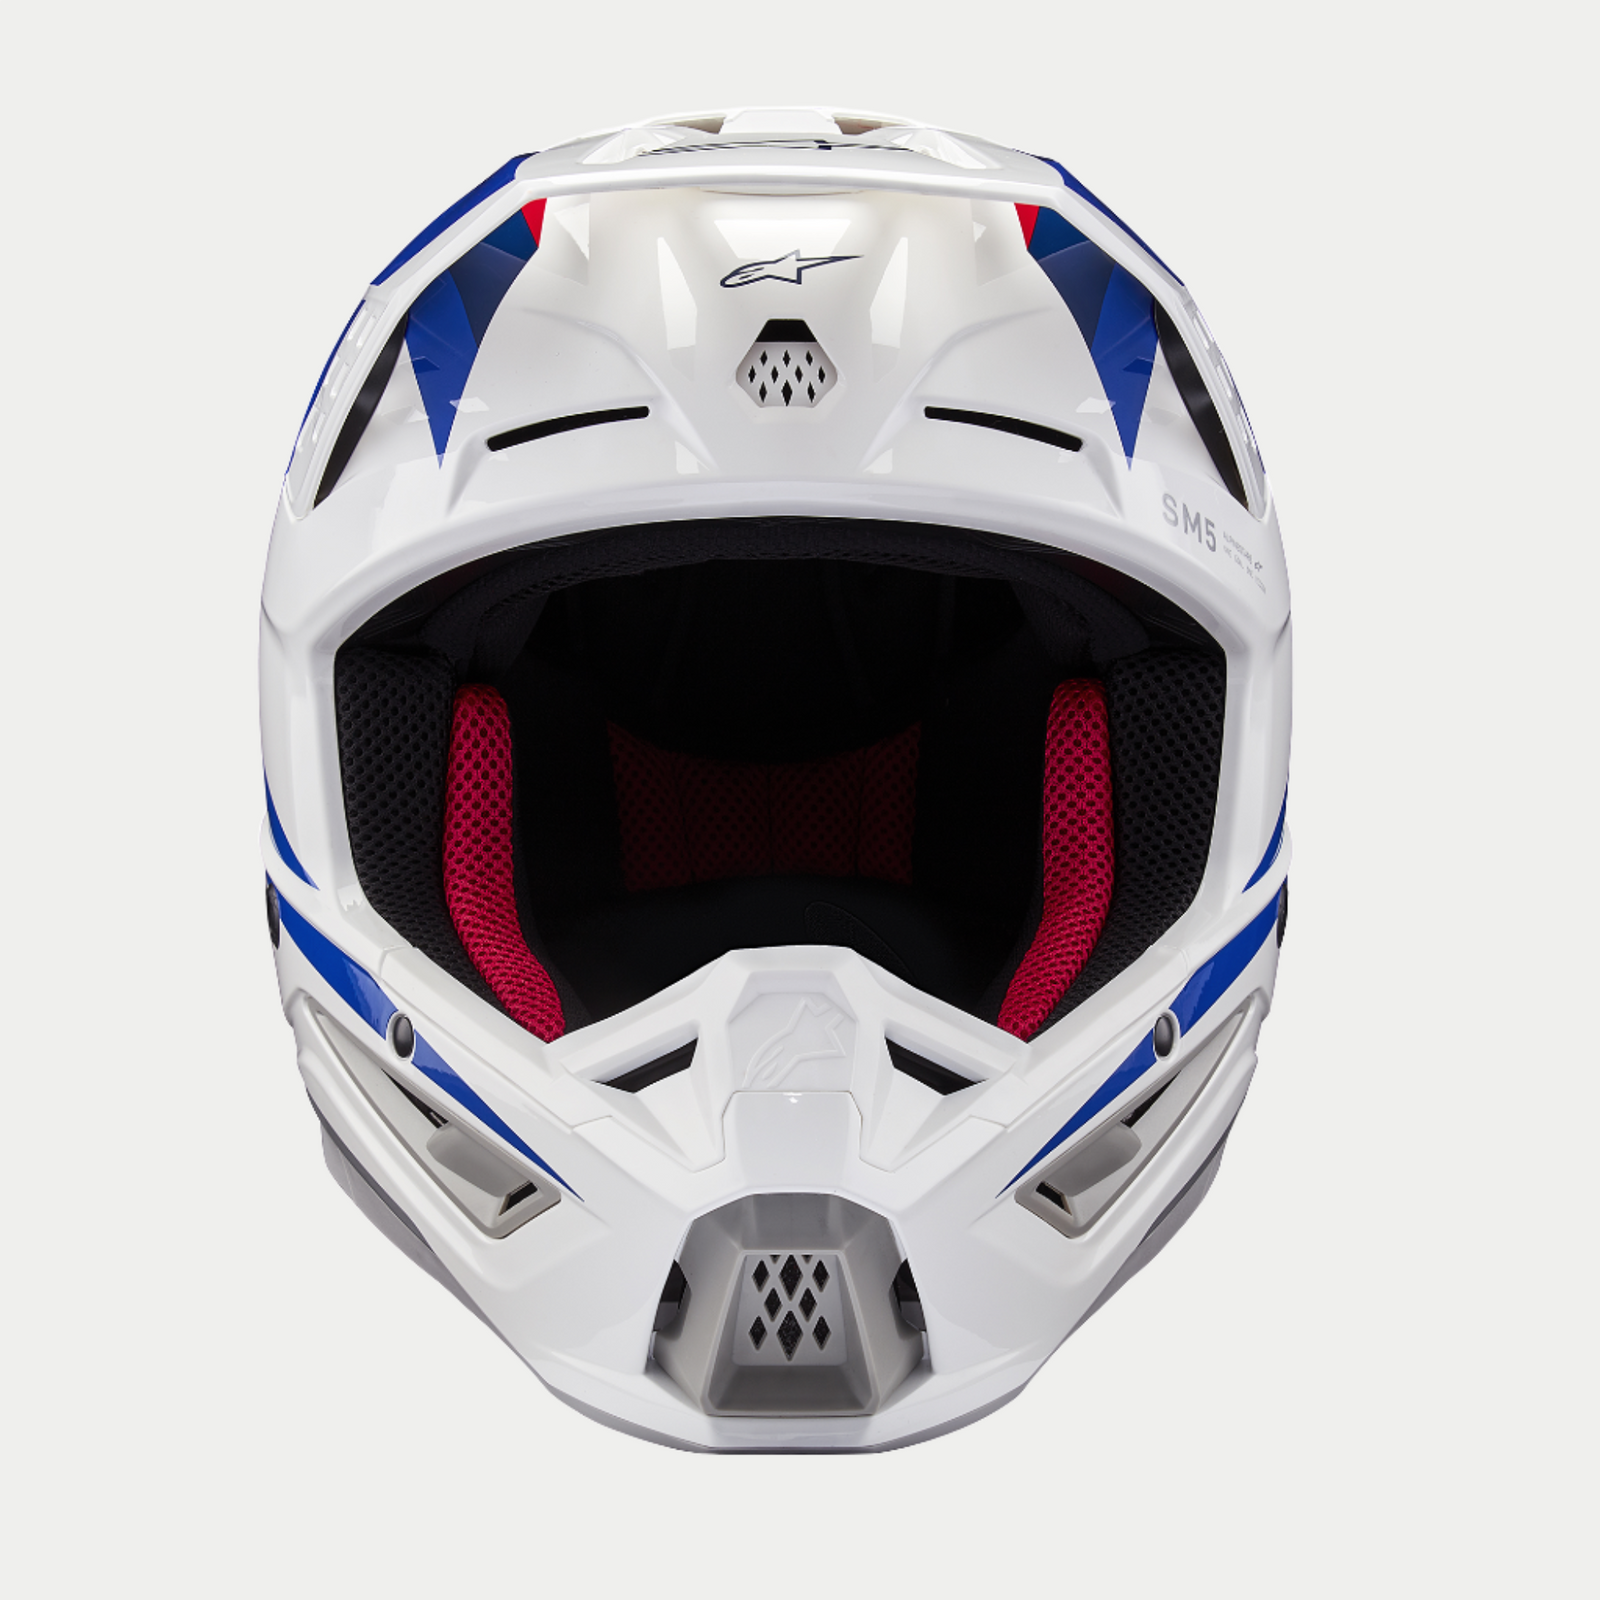 Honda SM5 Helmet